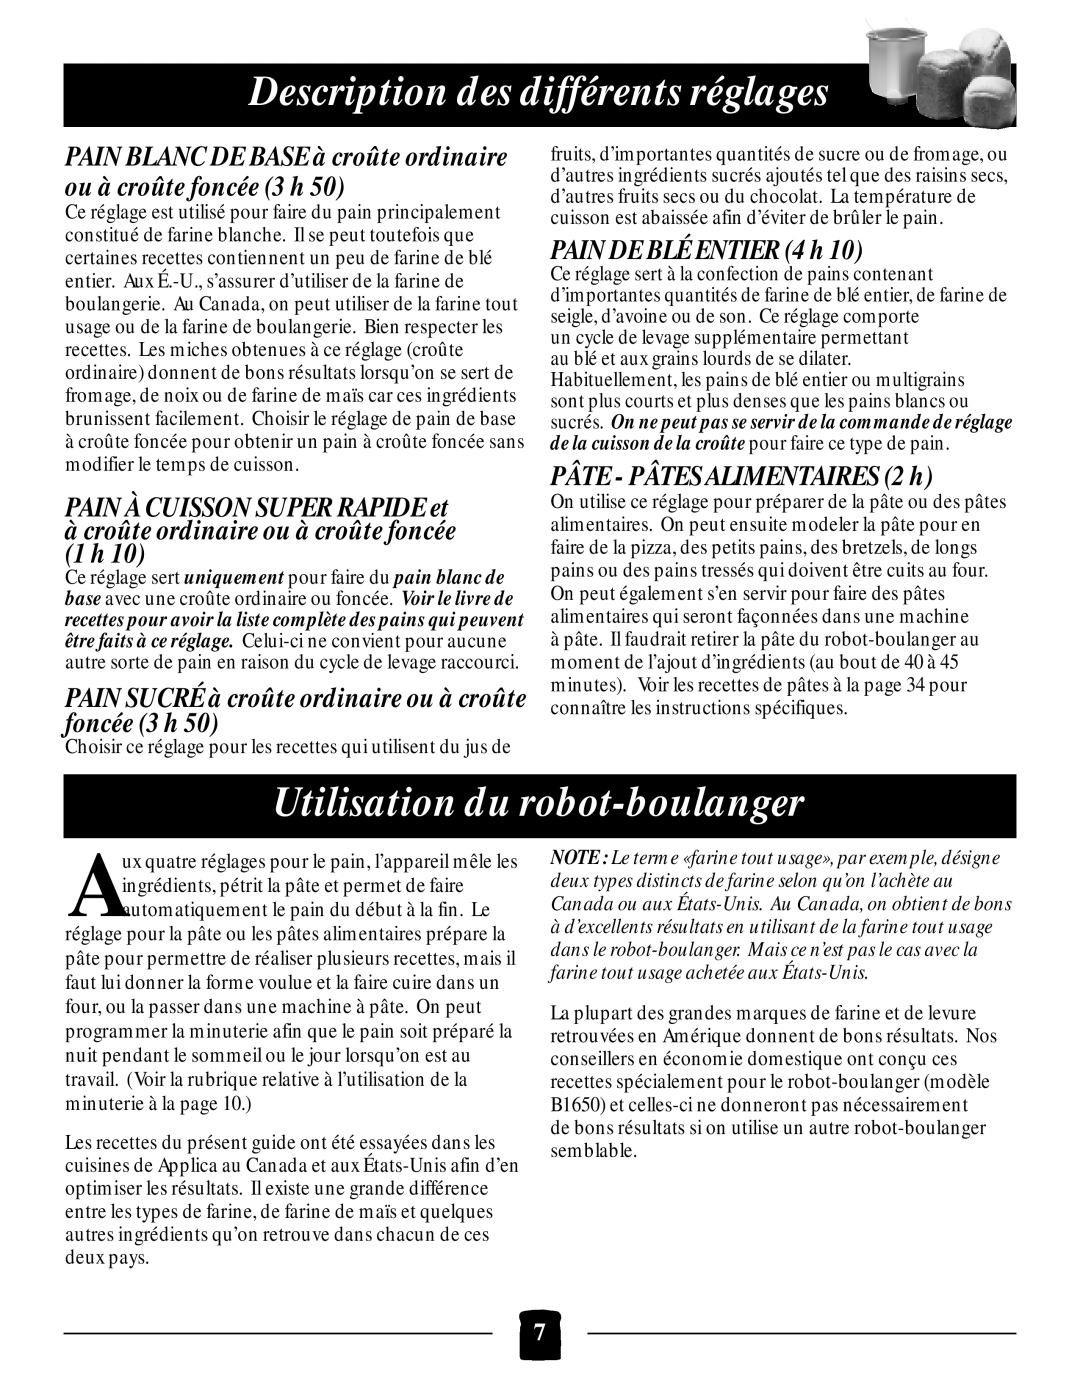 Black & Decker B1650 Utilisation du robot-boulanger, Description des différents réglages, PAIN À CUISSON SUPER RAPIDE et 